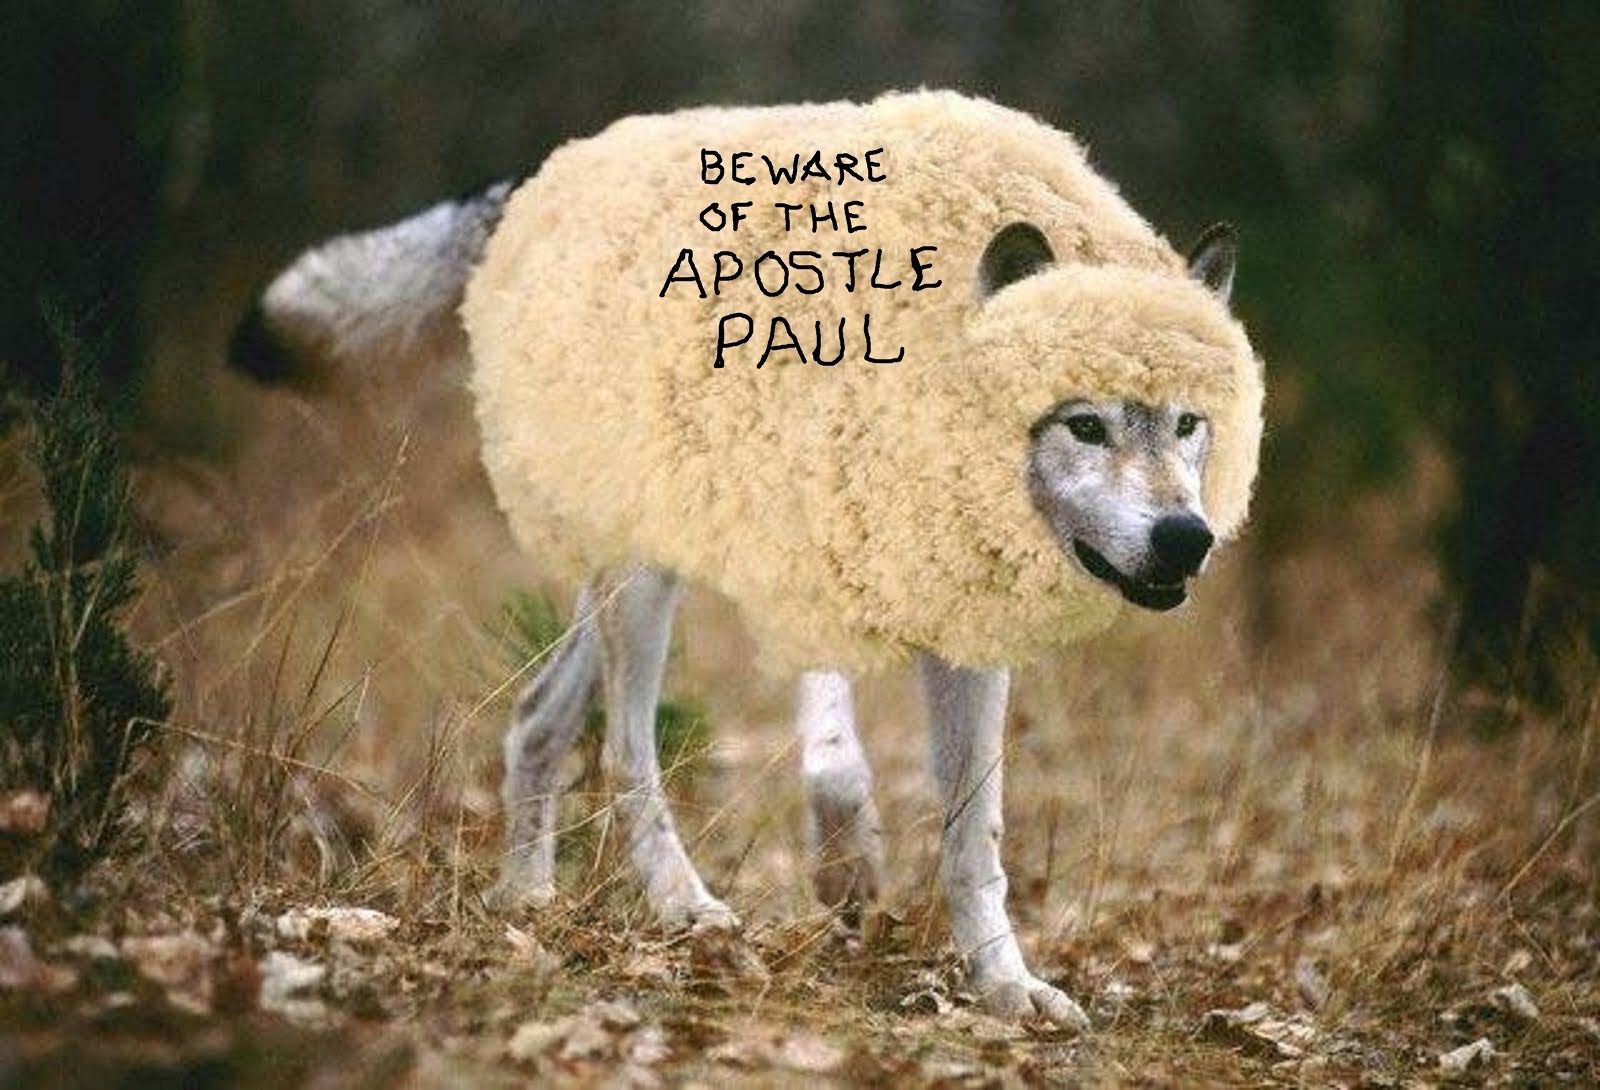 BEWARE OF THE APOSTLE PAUL